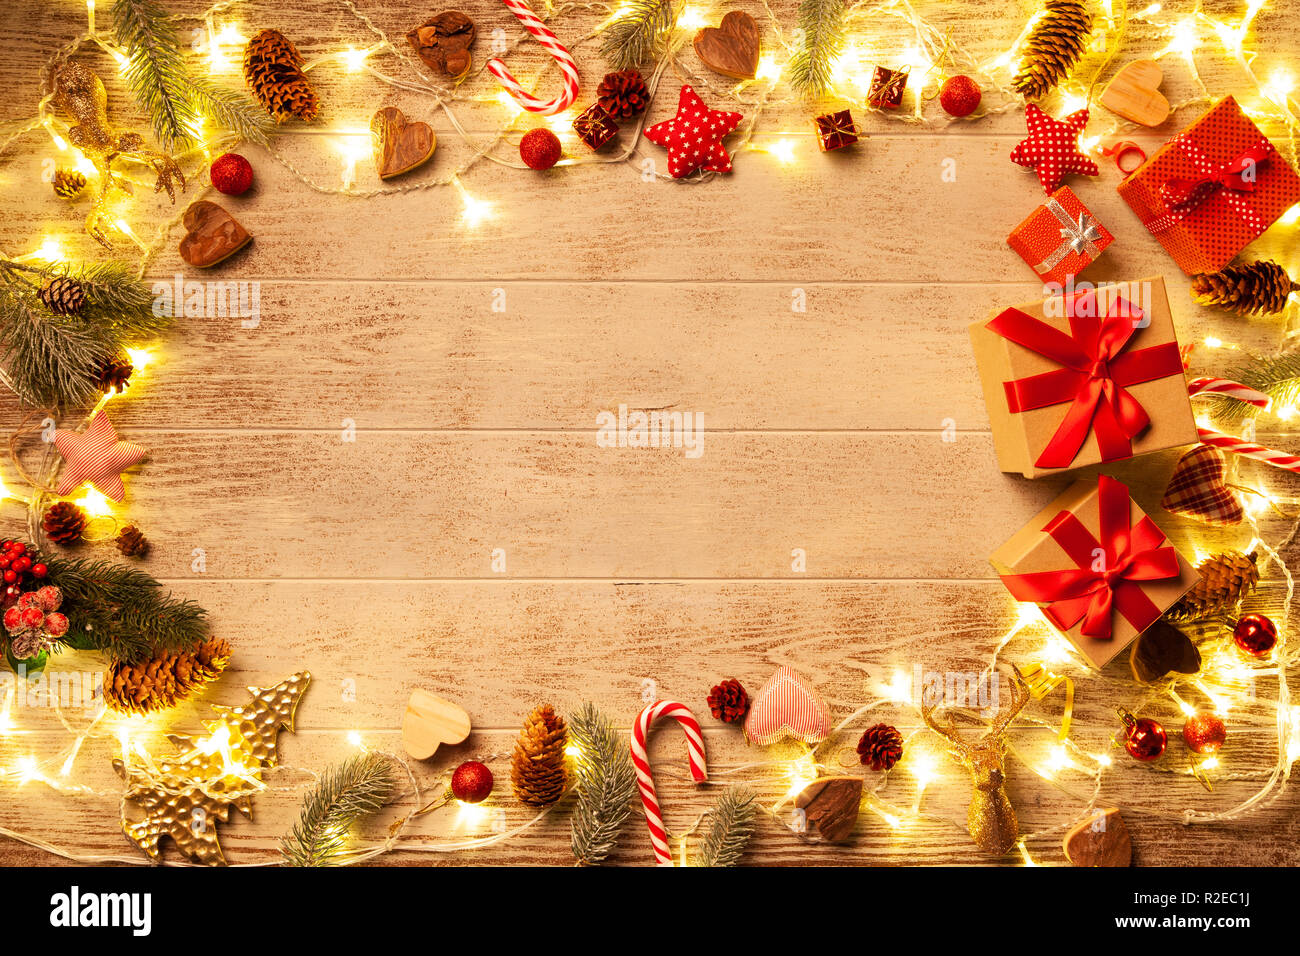 Weihnachtsbeleuchtung auf bewaldeten Hintergrund Stockfoto